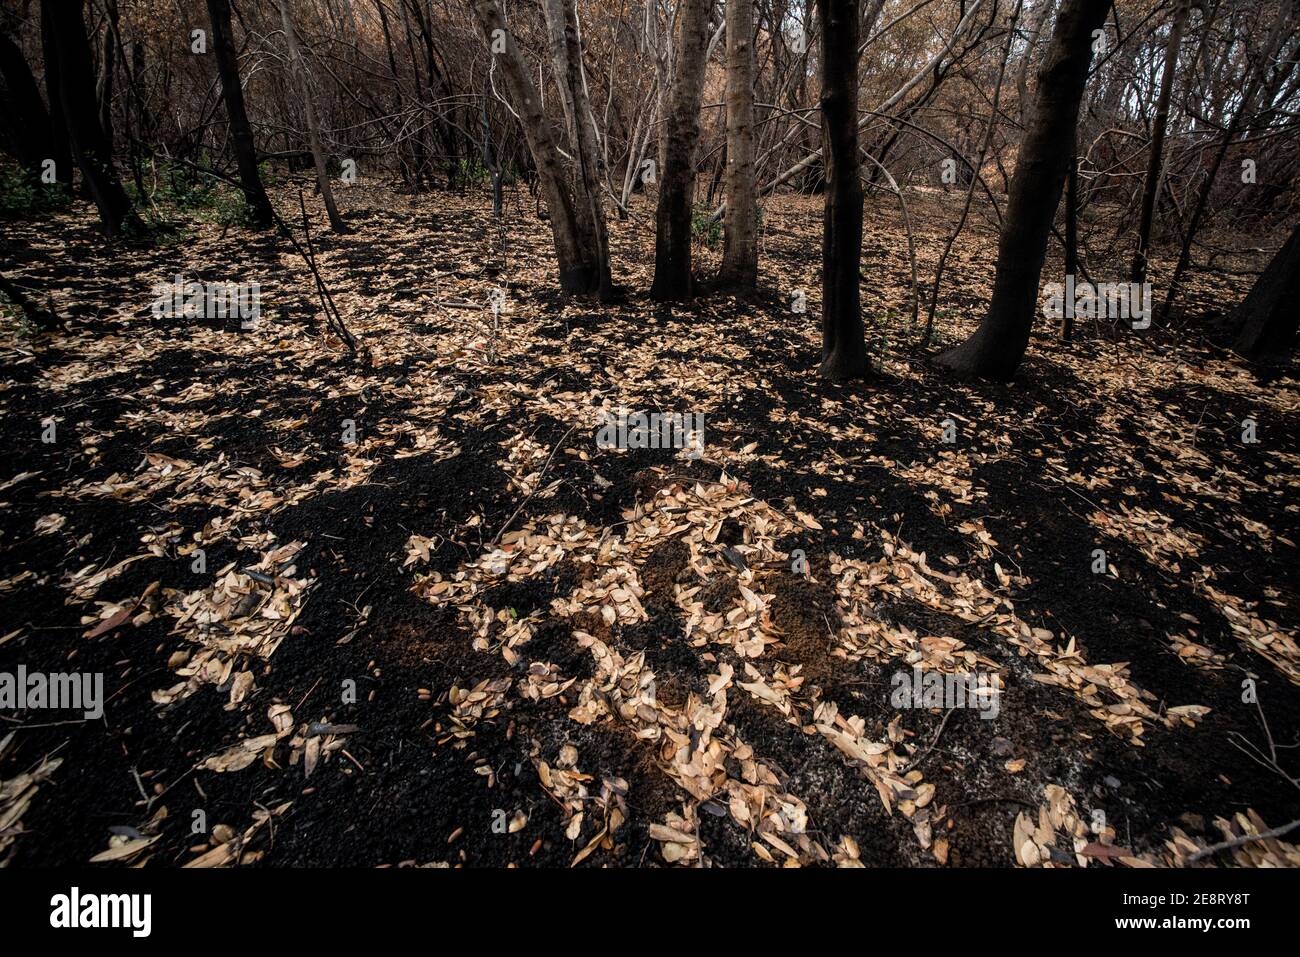 Les feuilles tombées s'assoient sur le sol carbonisé à la suite d'un feu de forêt, un contraste intéressant entre les feuilles mortes et le sol brûlé. Banque D'Images